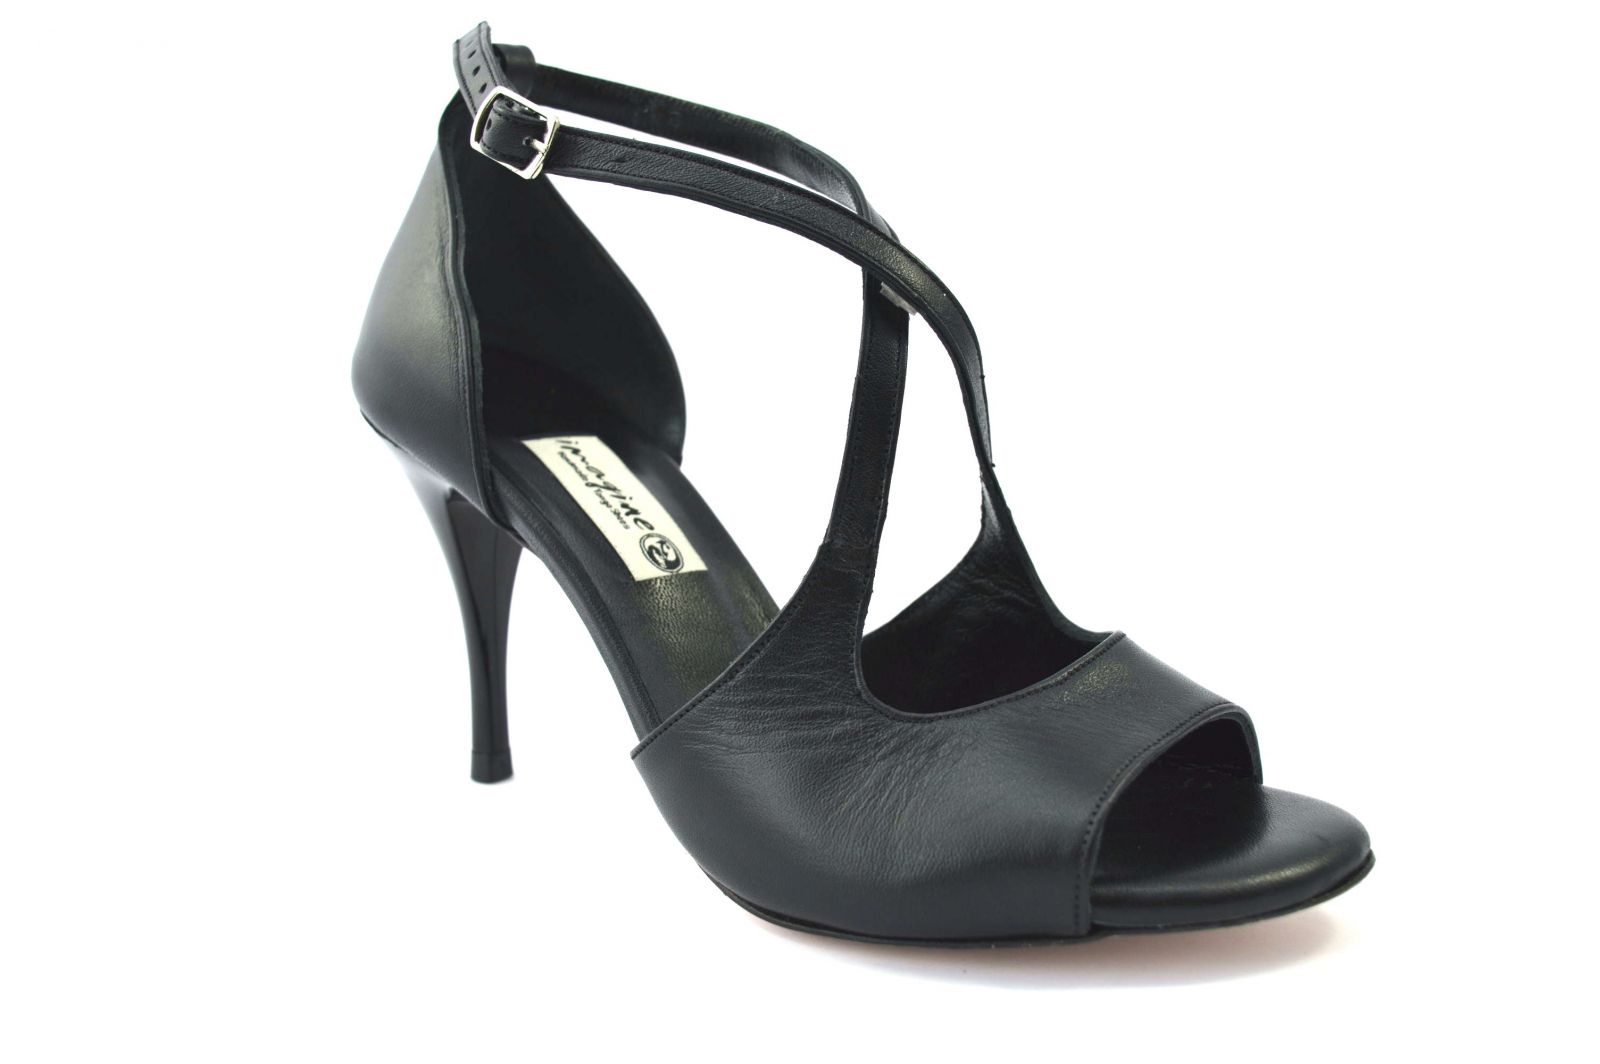 Γυναικείο παπούτσι tango, open toe από μαύρο ματ δέρμα